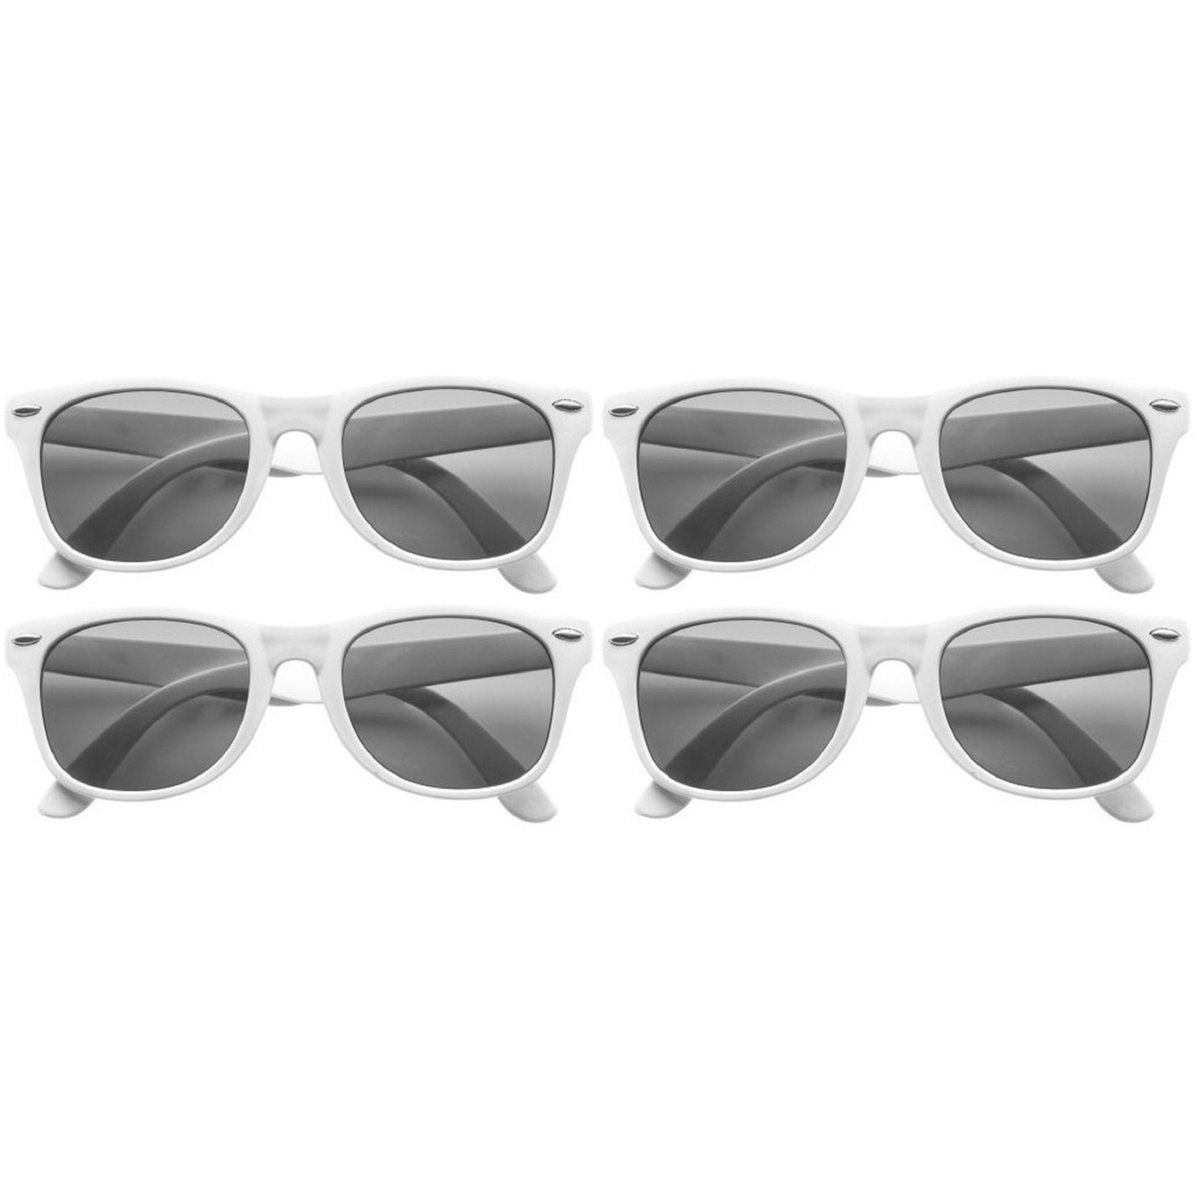 12x stuks zonnebril wit - UV400 bescherming - Zonnebrillen voor dames/heren